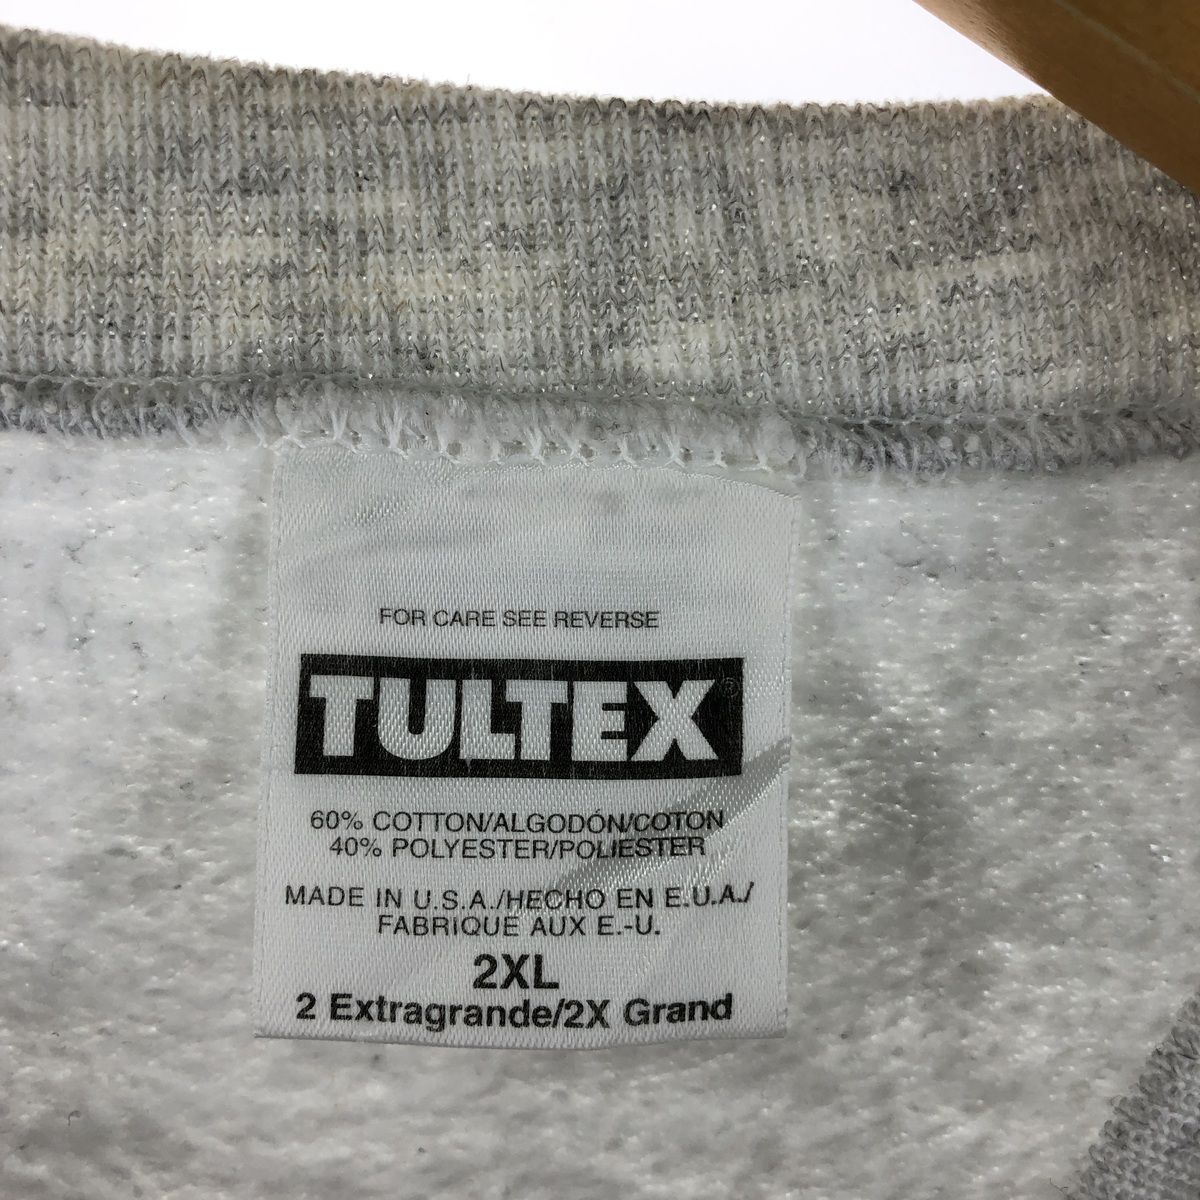 古着 90年代 タルテックス TULTEX 犬柄 アニマル スウェットシャツ 